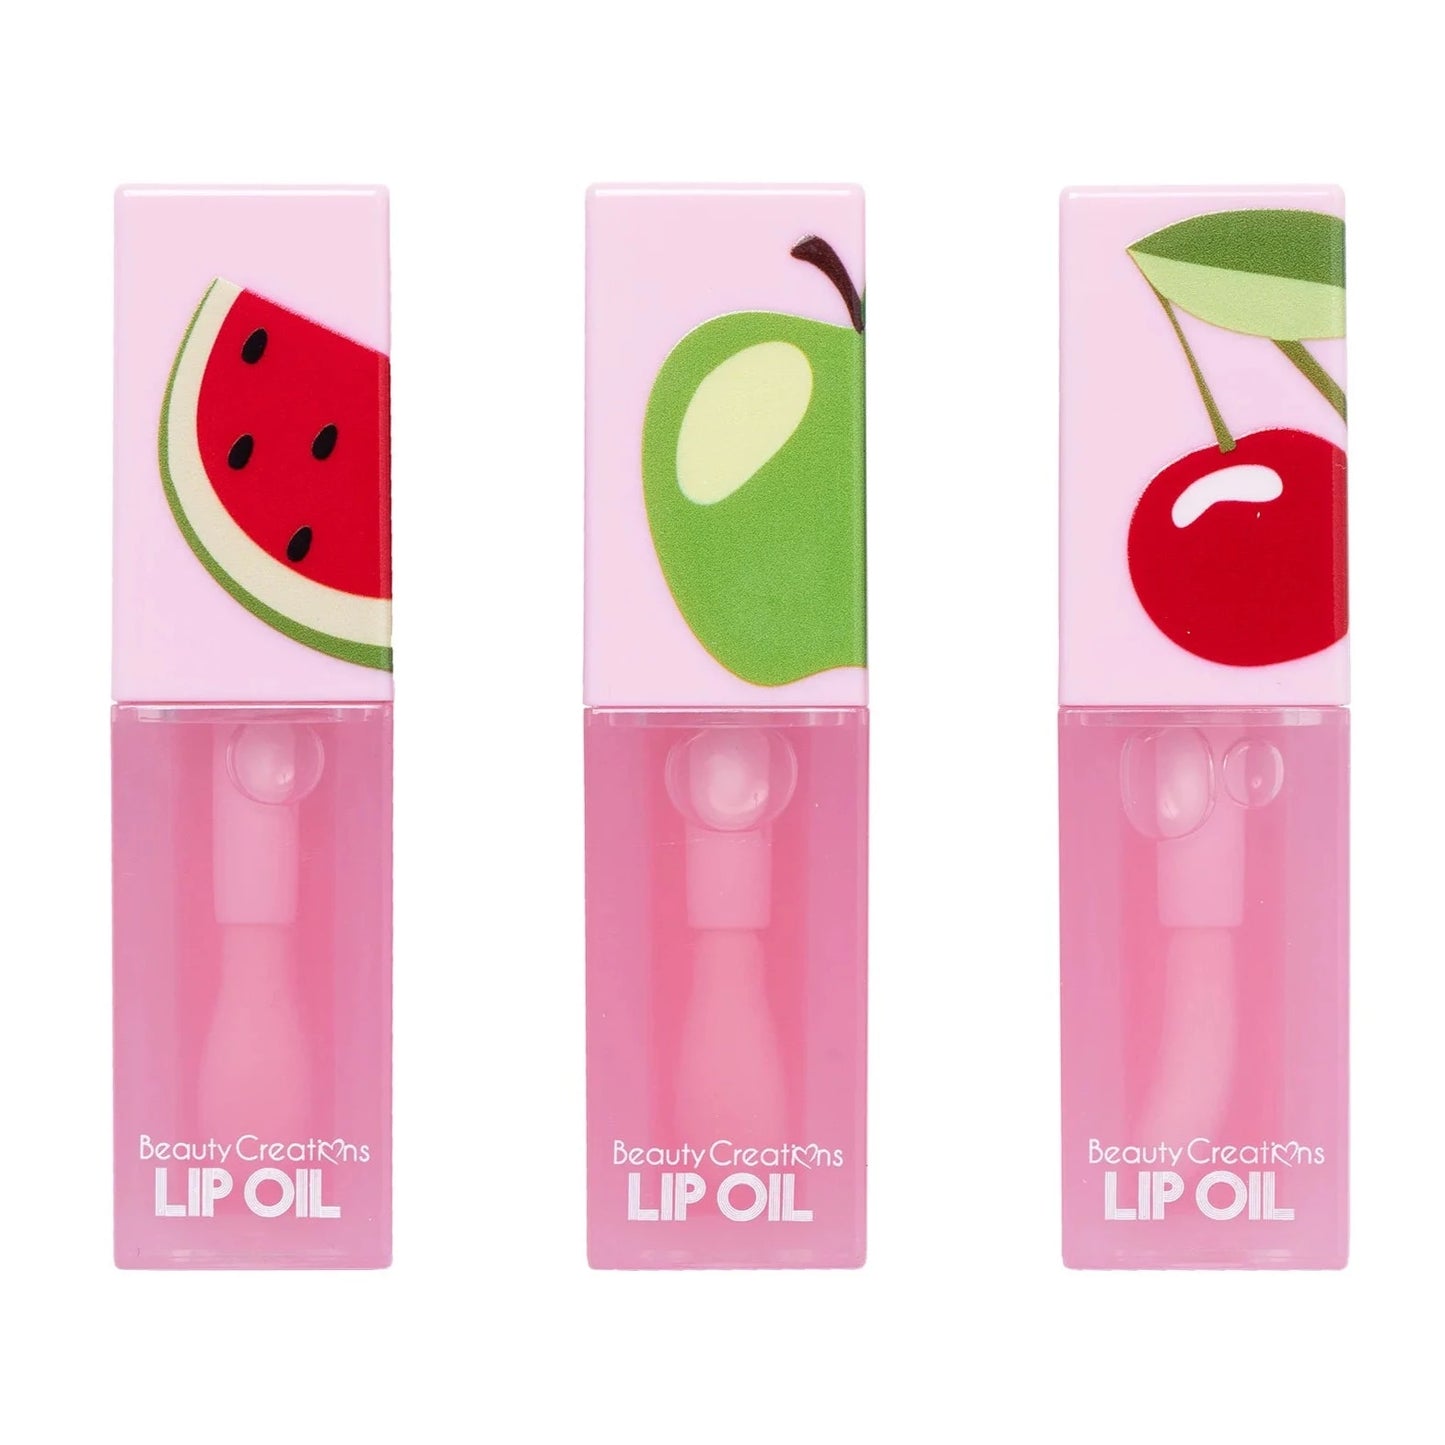 Glowy Pout Lip Oil Set